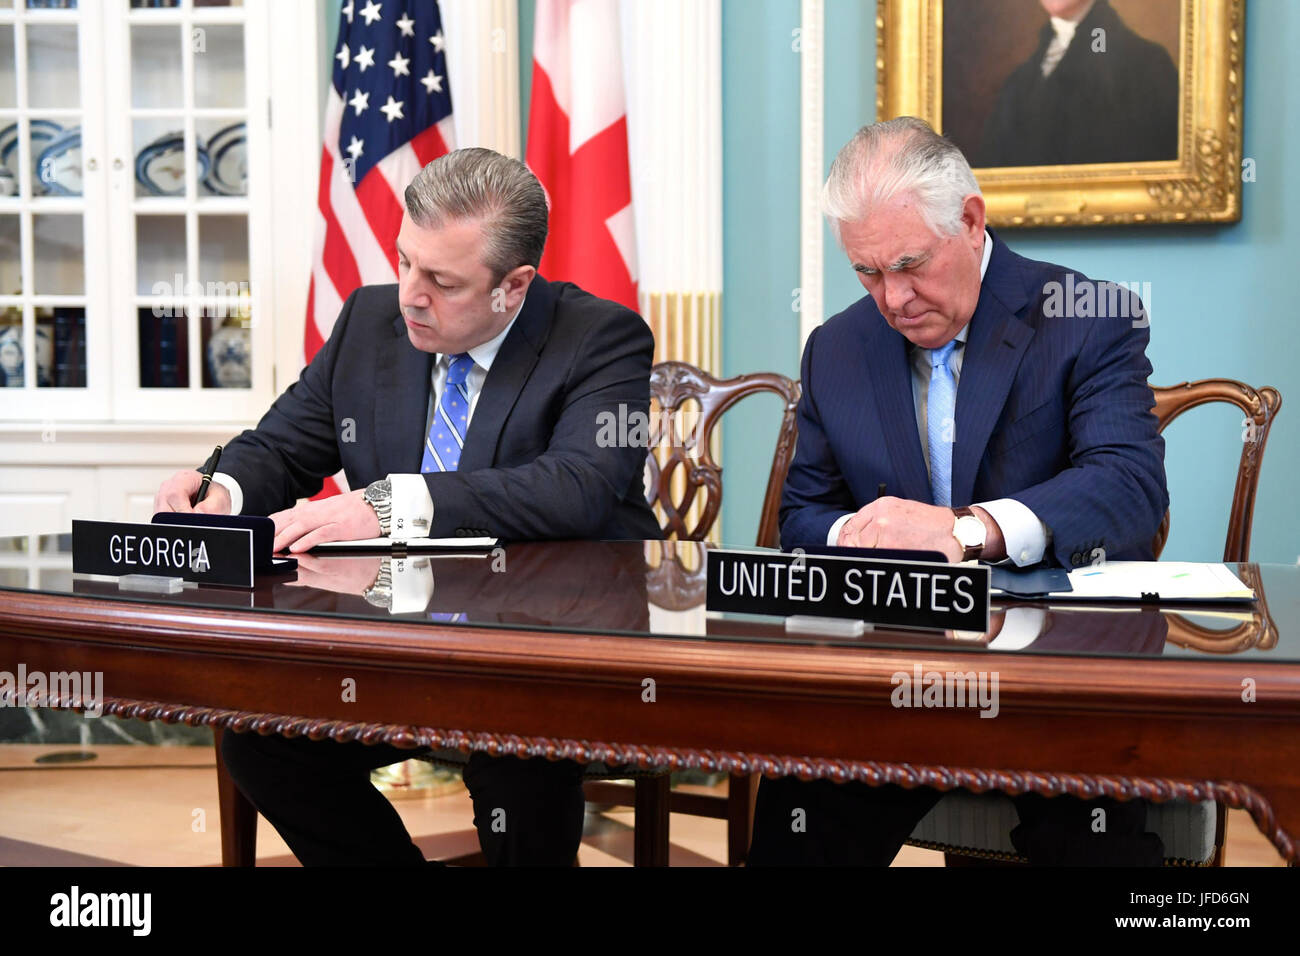 La secrétaire d'État des États-Unis, Rex Tillerson et Premier Ministre géorgien Giorgi Kvirikashvili participer à une cérémonie de signature pour les États-Unis et la Géorgie de l'Accord sur la sécurité de l'information, au Département d'État des États-Unis à Washington, D.C., le 9 mai 2017. Banque D'Images